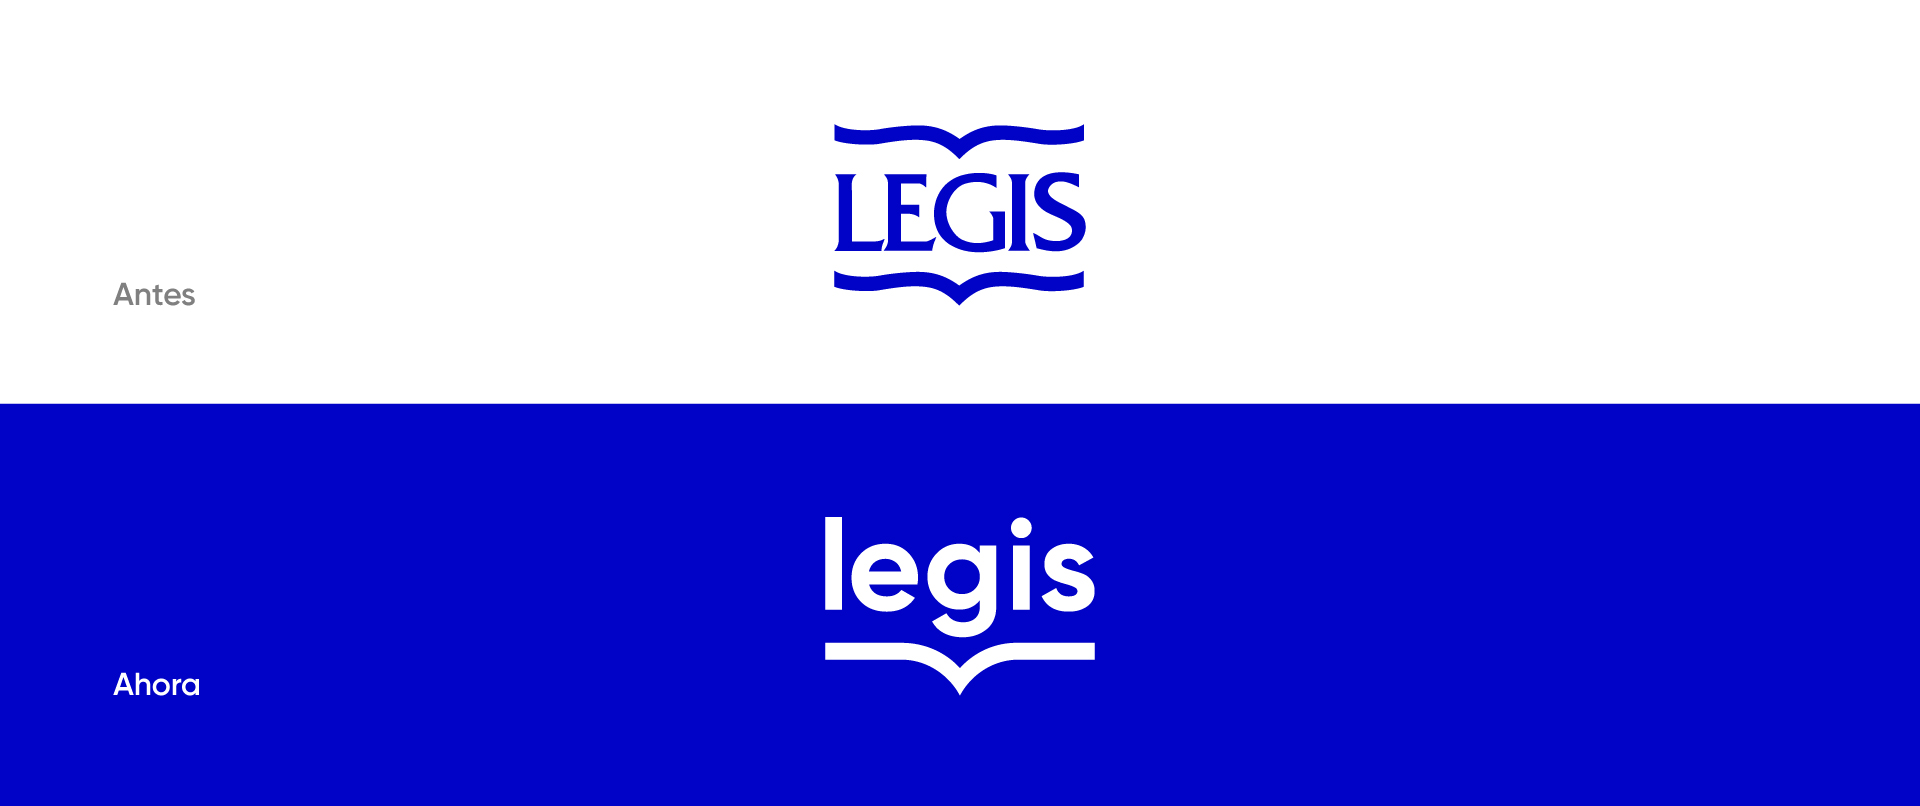 Comparación entre el logo corporativo anterior y el nuevo logo de Legis. Rediseño de marca.